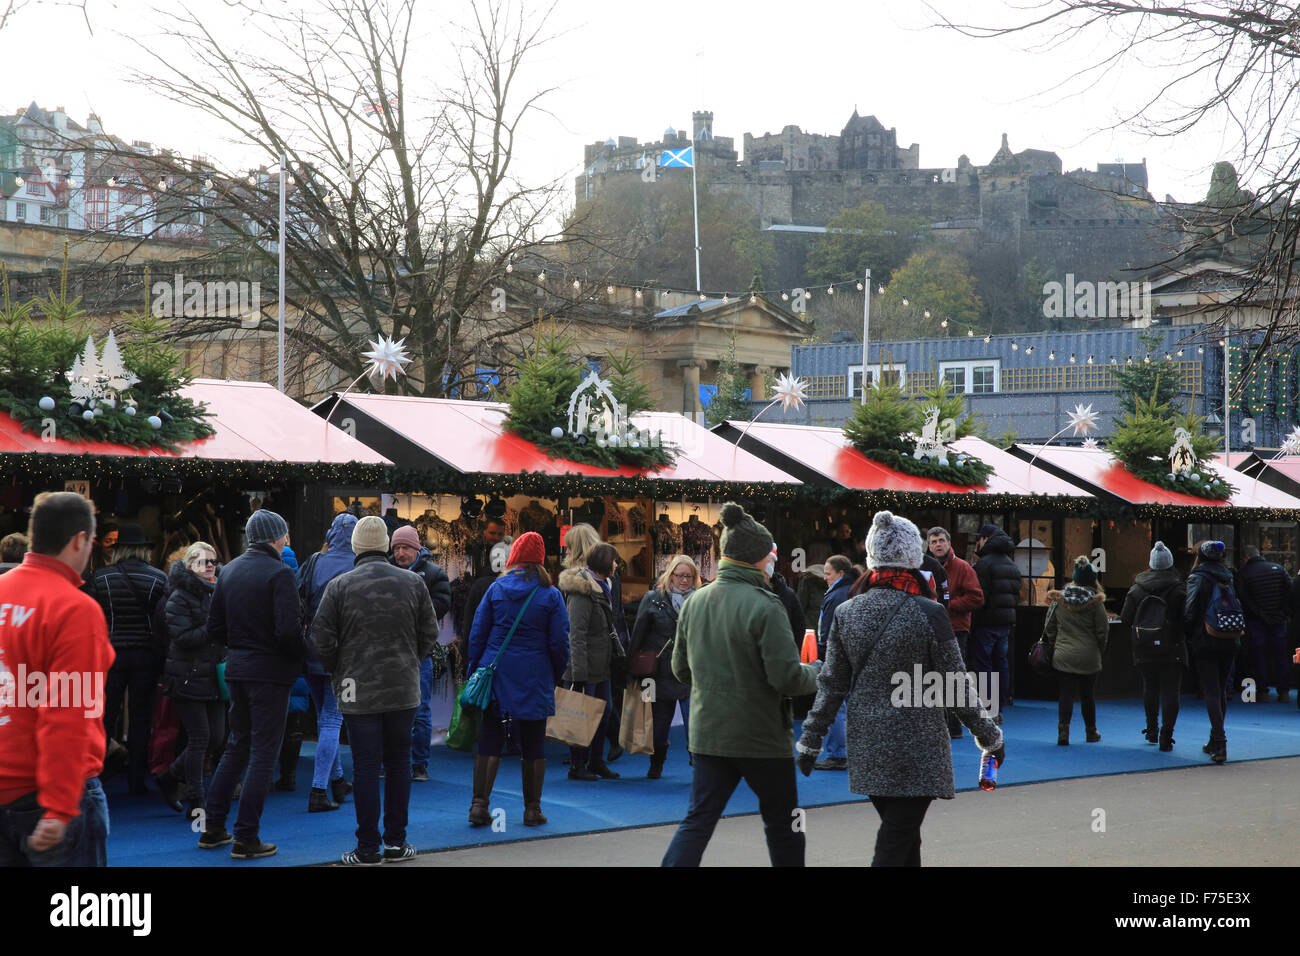 Marché de Noël à Édimbourg à l'Est des jardins de Princes Street, avec le château derrière, dans un endroit ensoleillé, jour d'hiver, en Ecosse, Royaume-Uni Banque D'Images